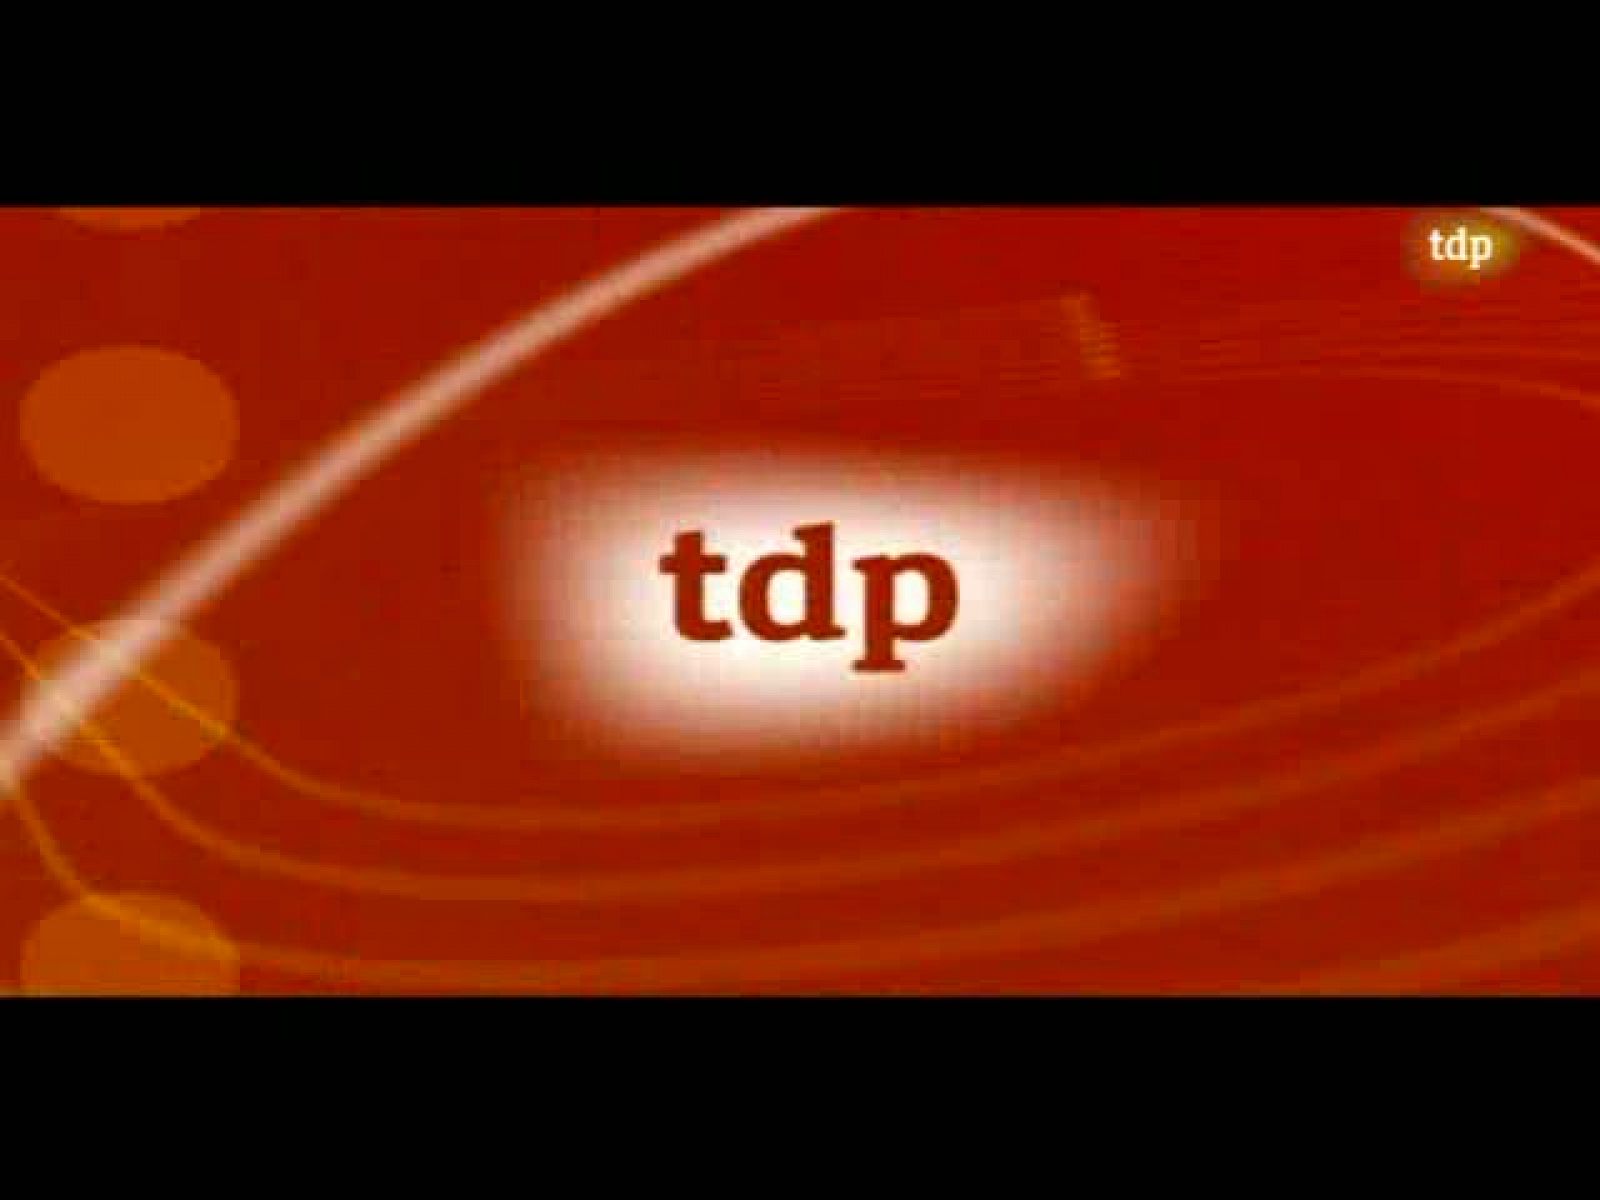 TDP Noticias 2 - 20/11/10